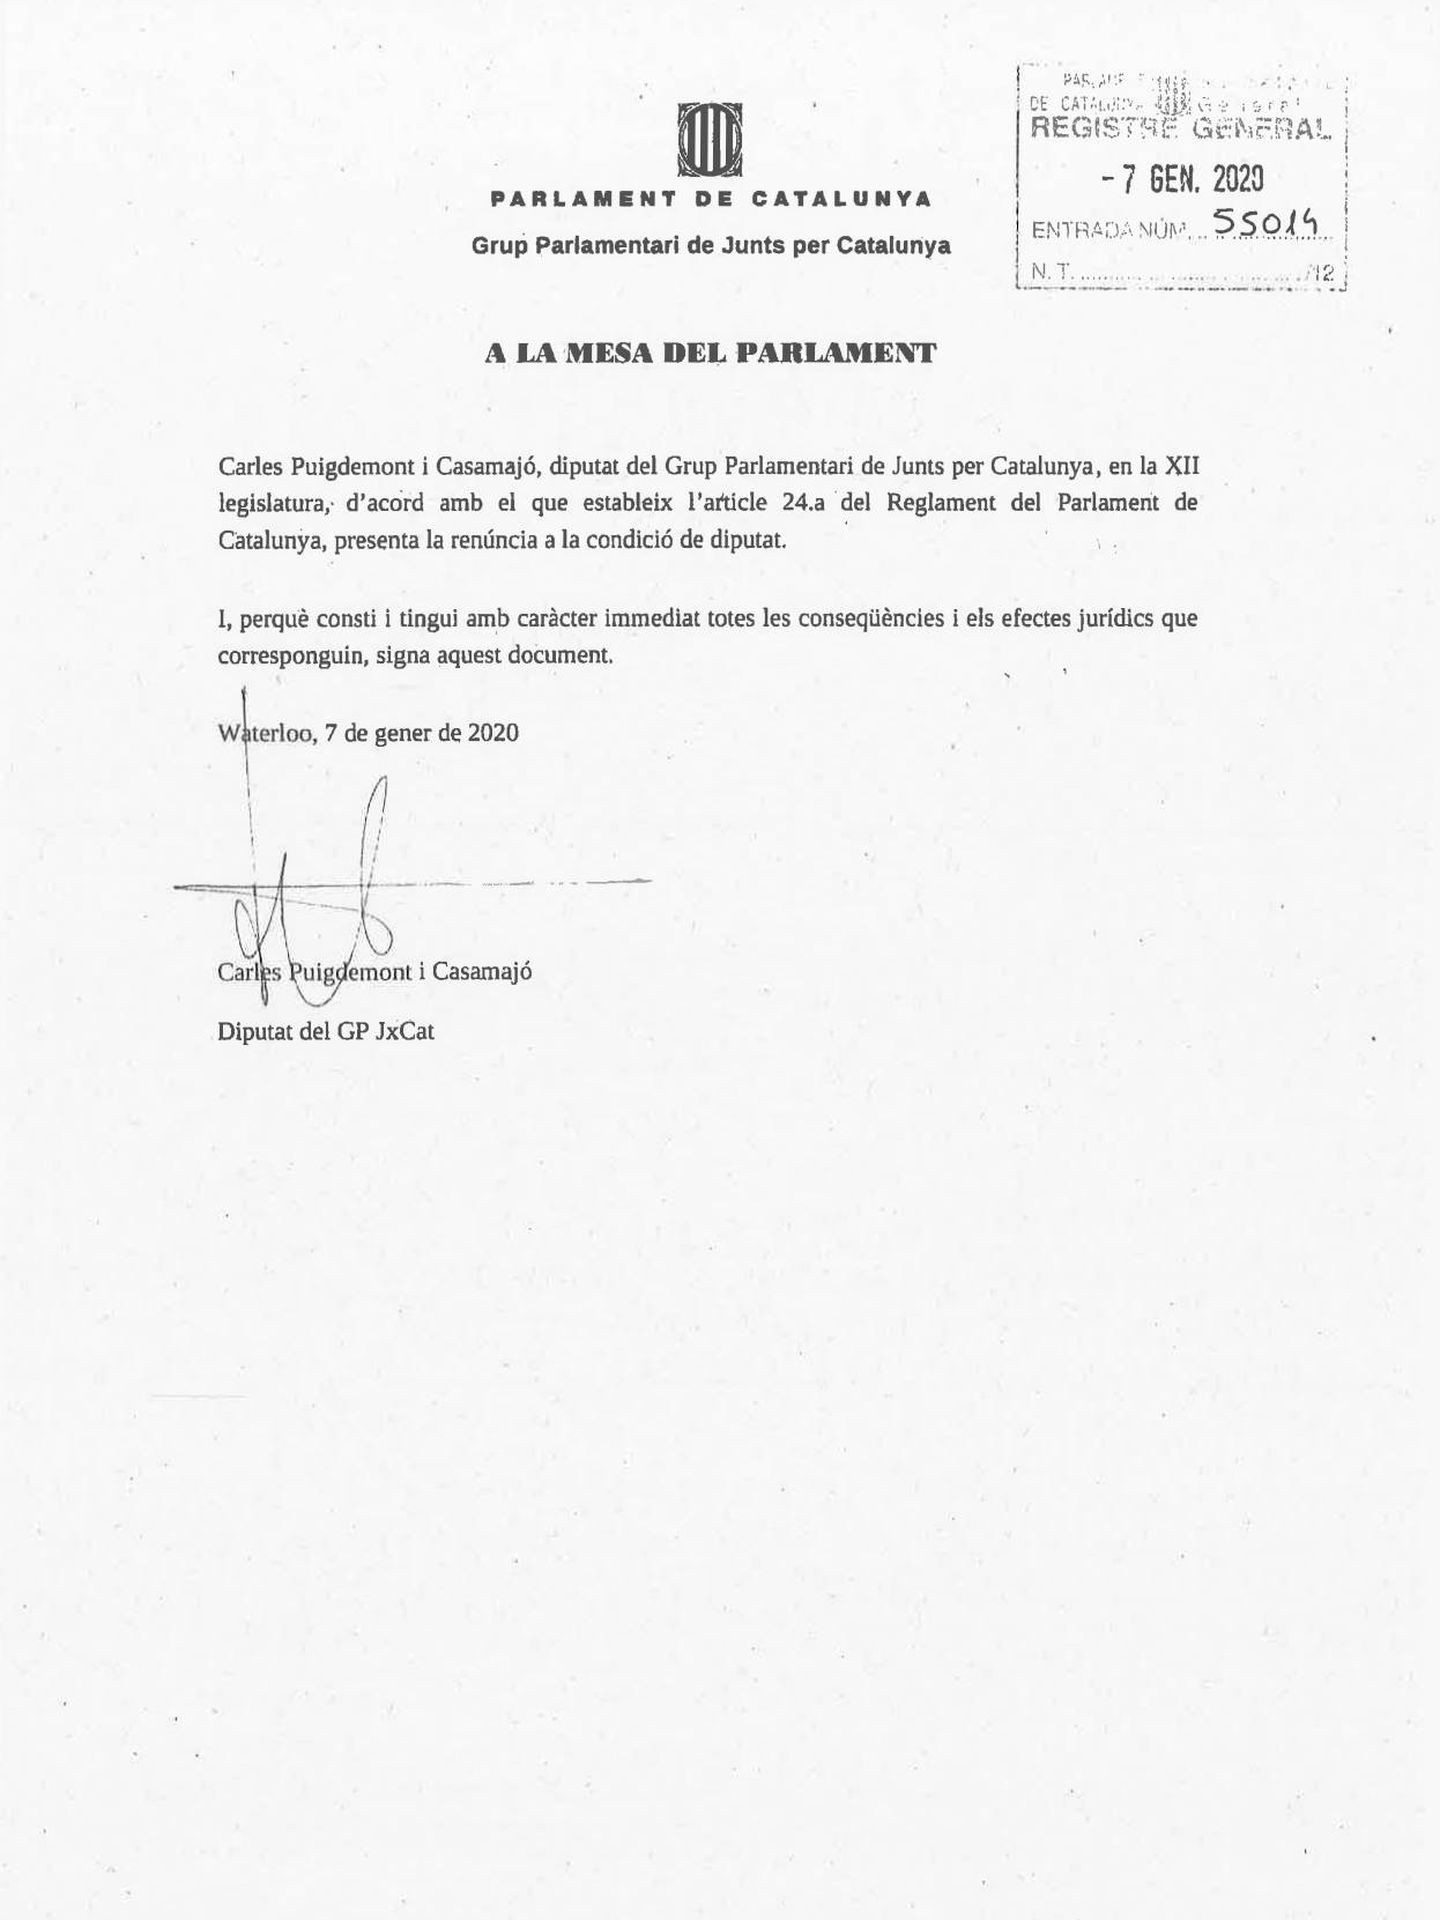 Pinche para leer la renuncia de Puigdemont.